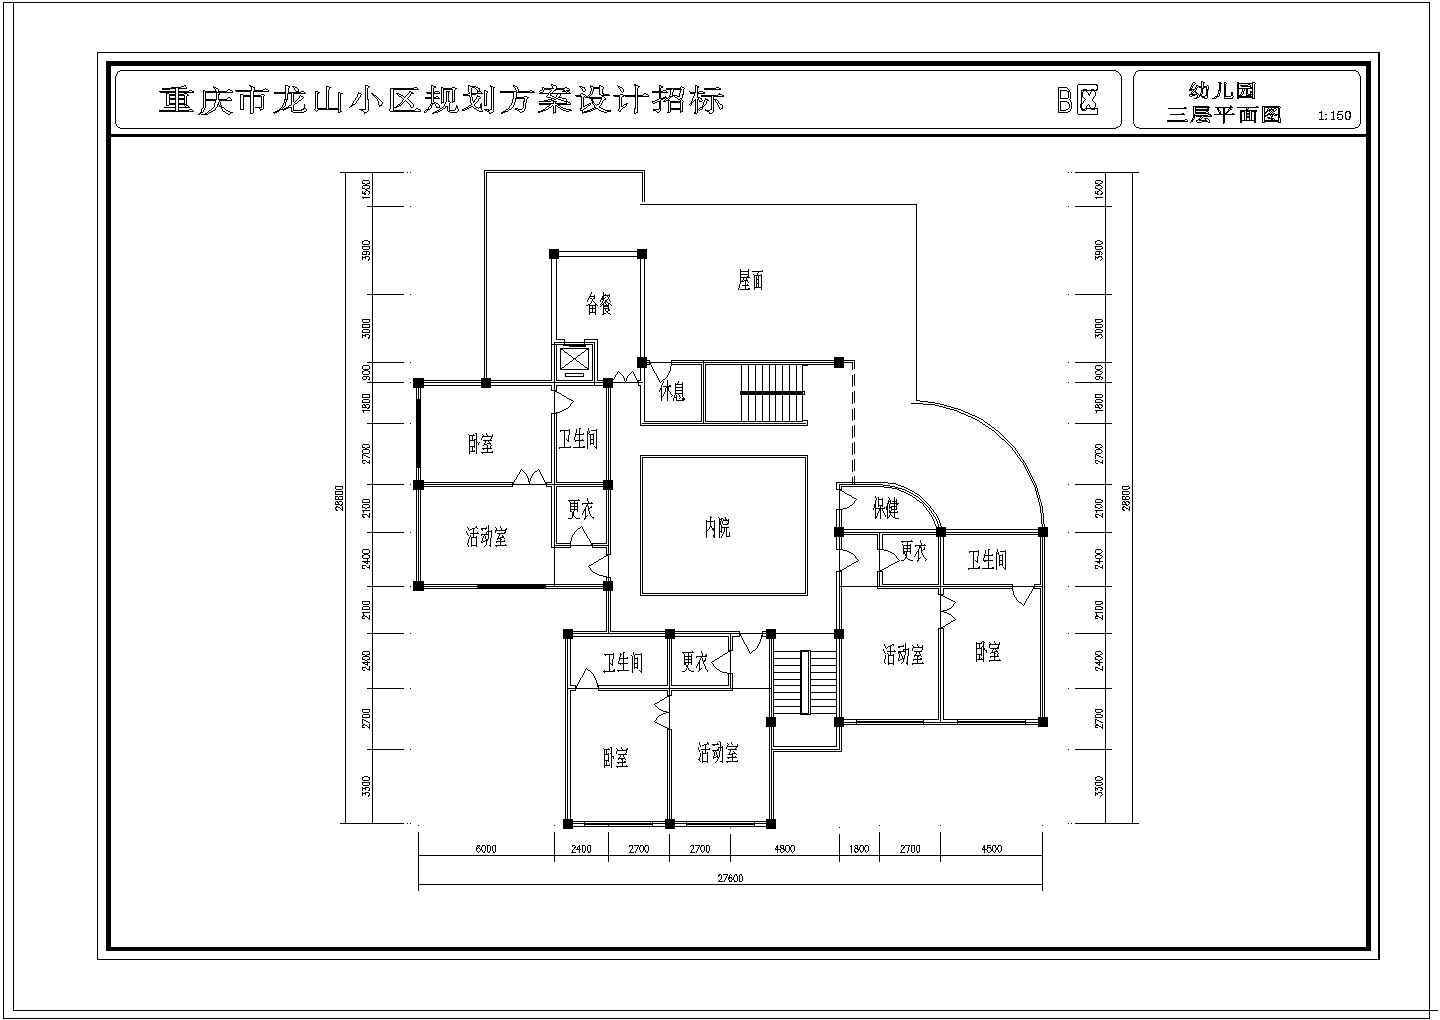 【重庆市】龙山小区幼儿园规划方案设计招标